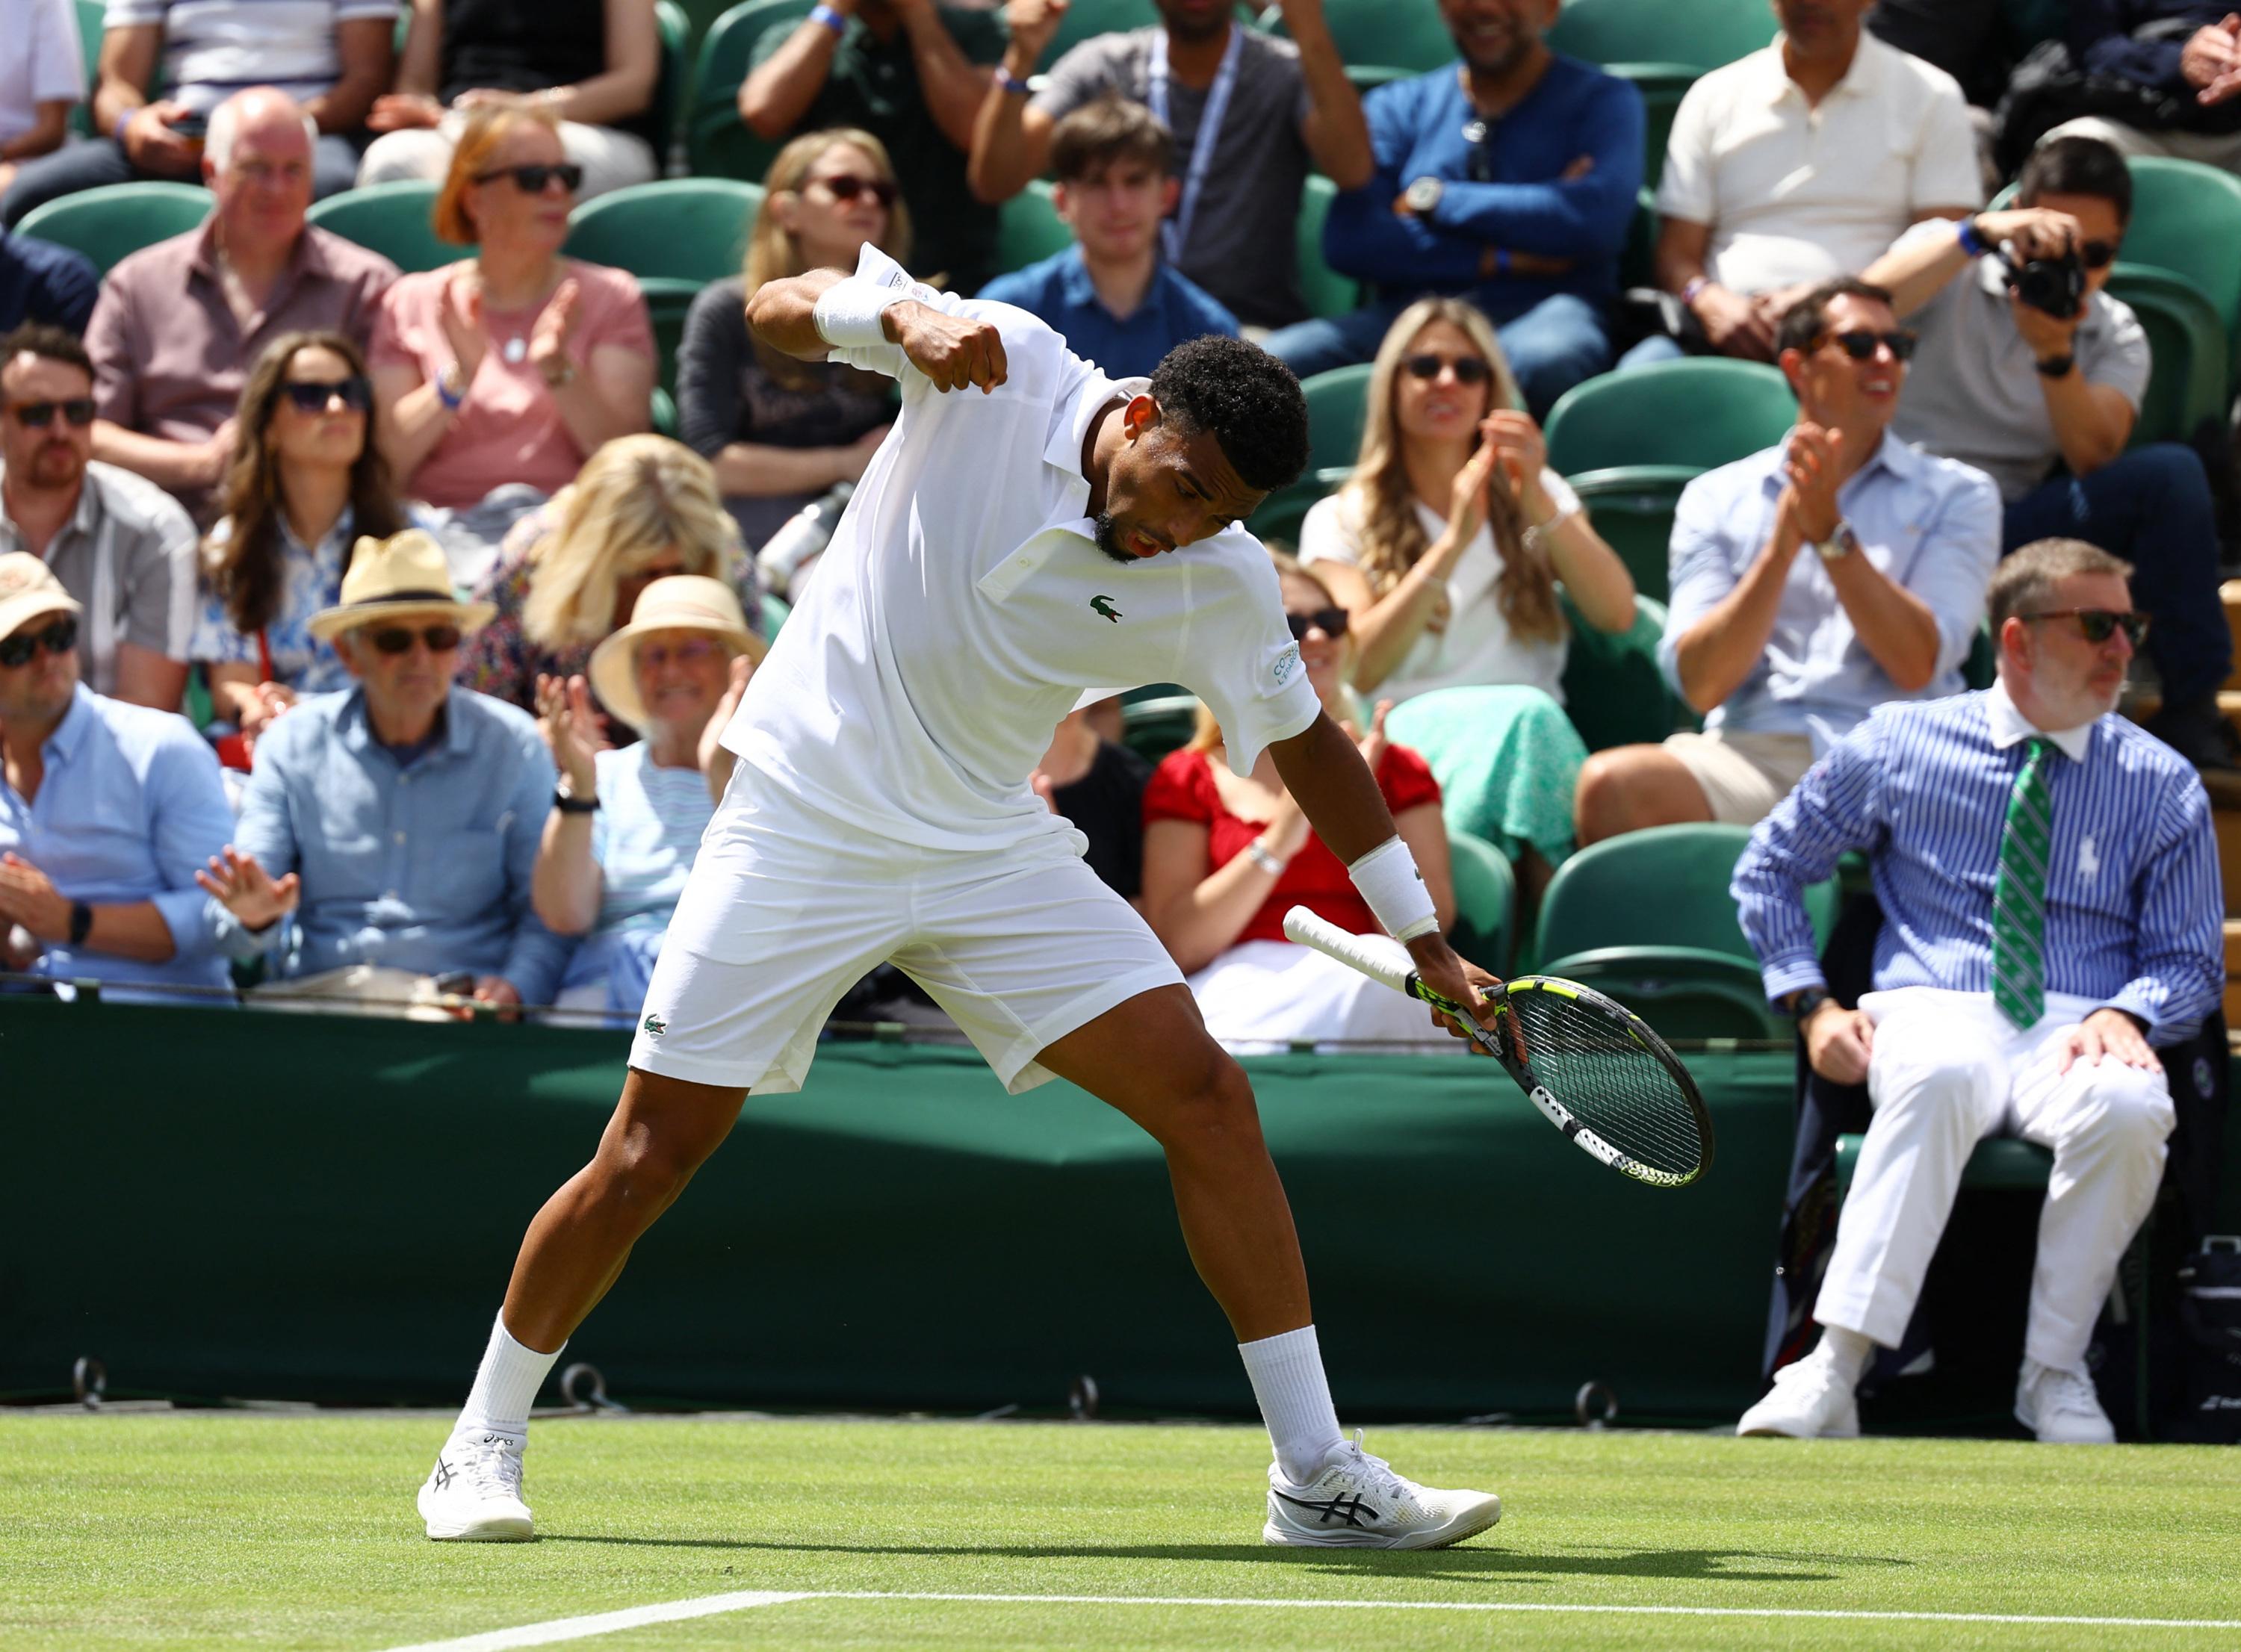 EN DIRECT - Wimbledon : Fils s’impose contre Hurkacz, Djokovic en contrôle